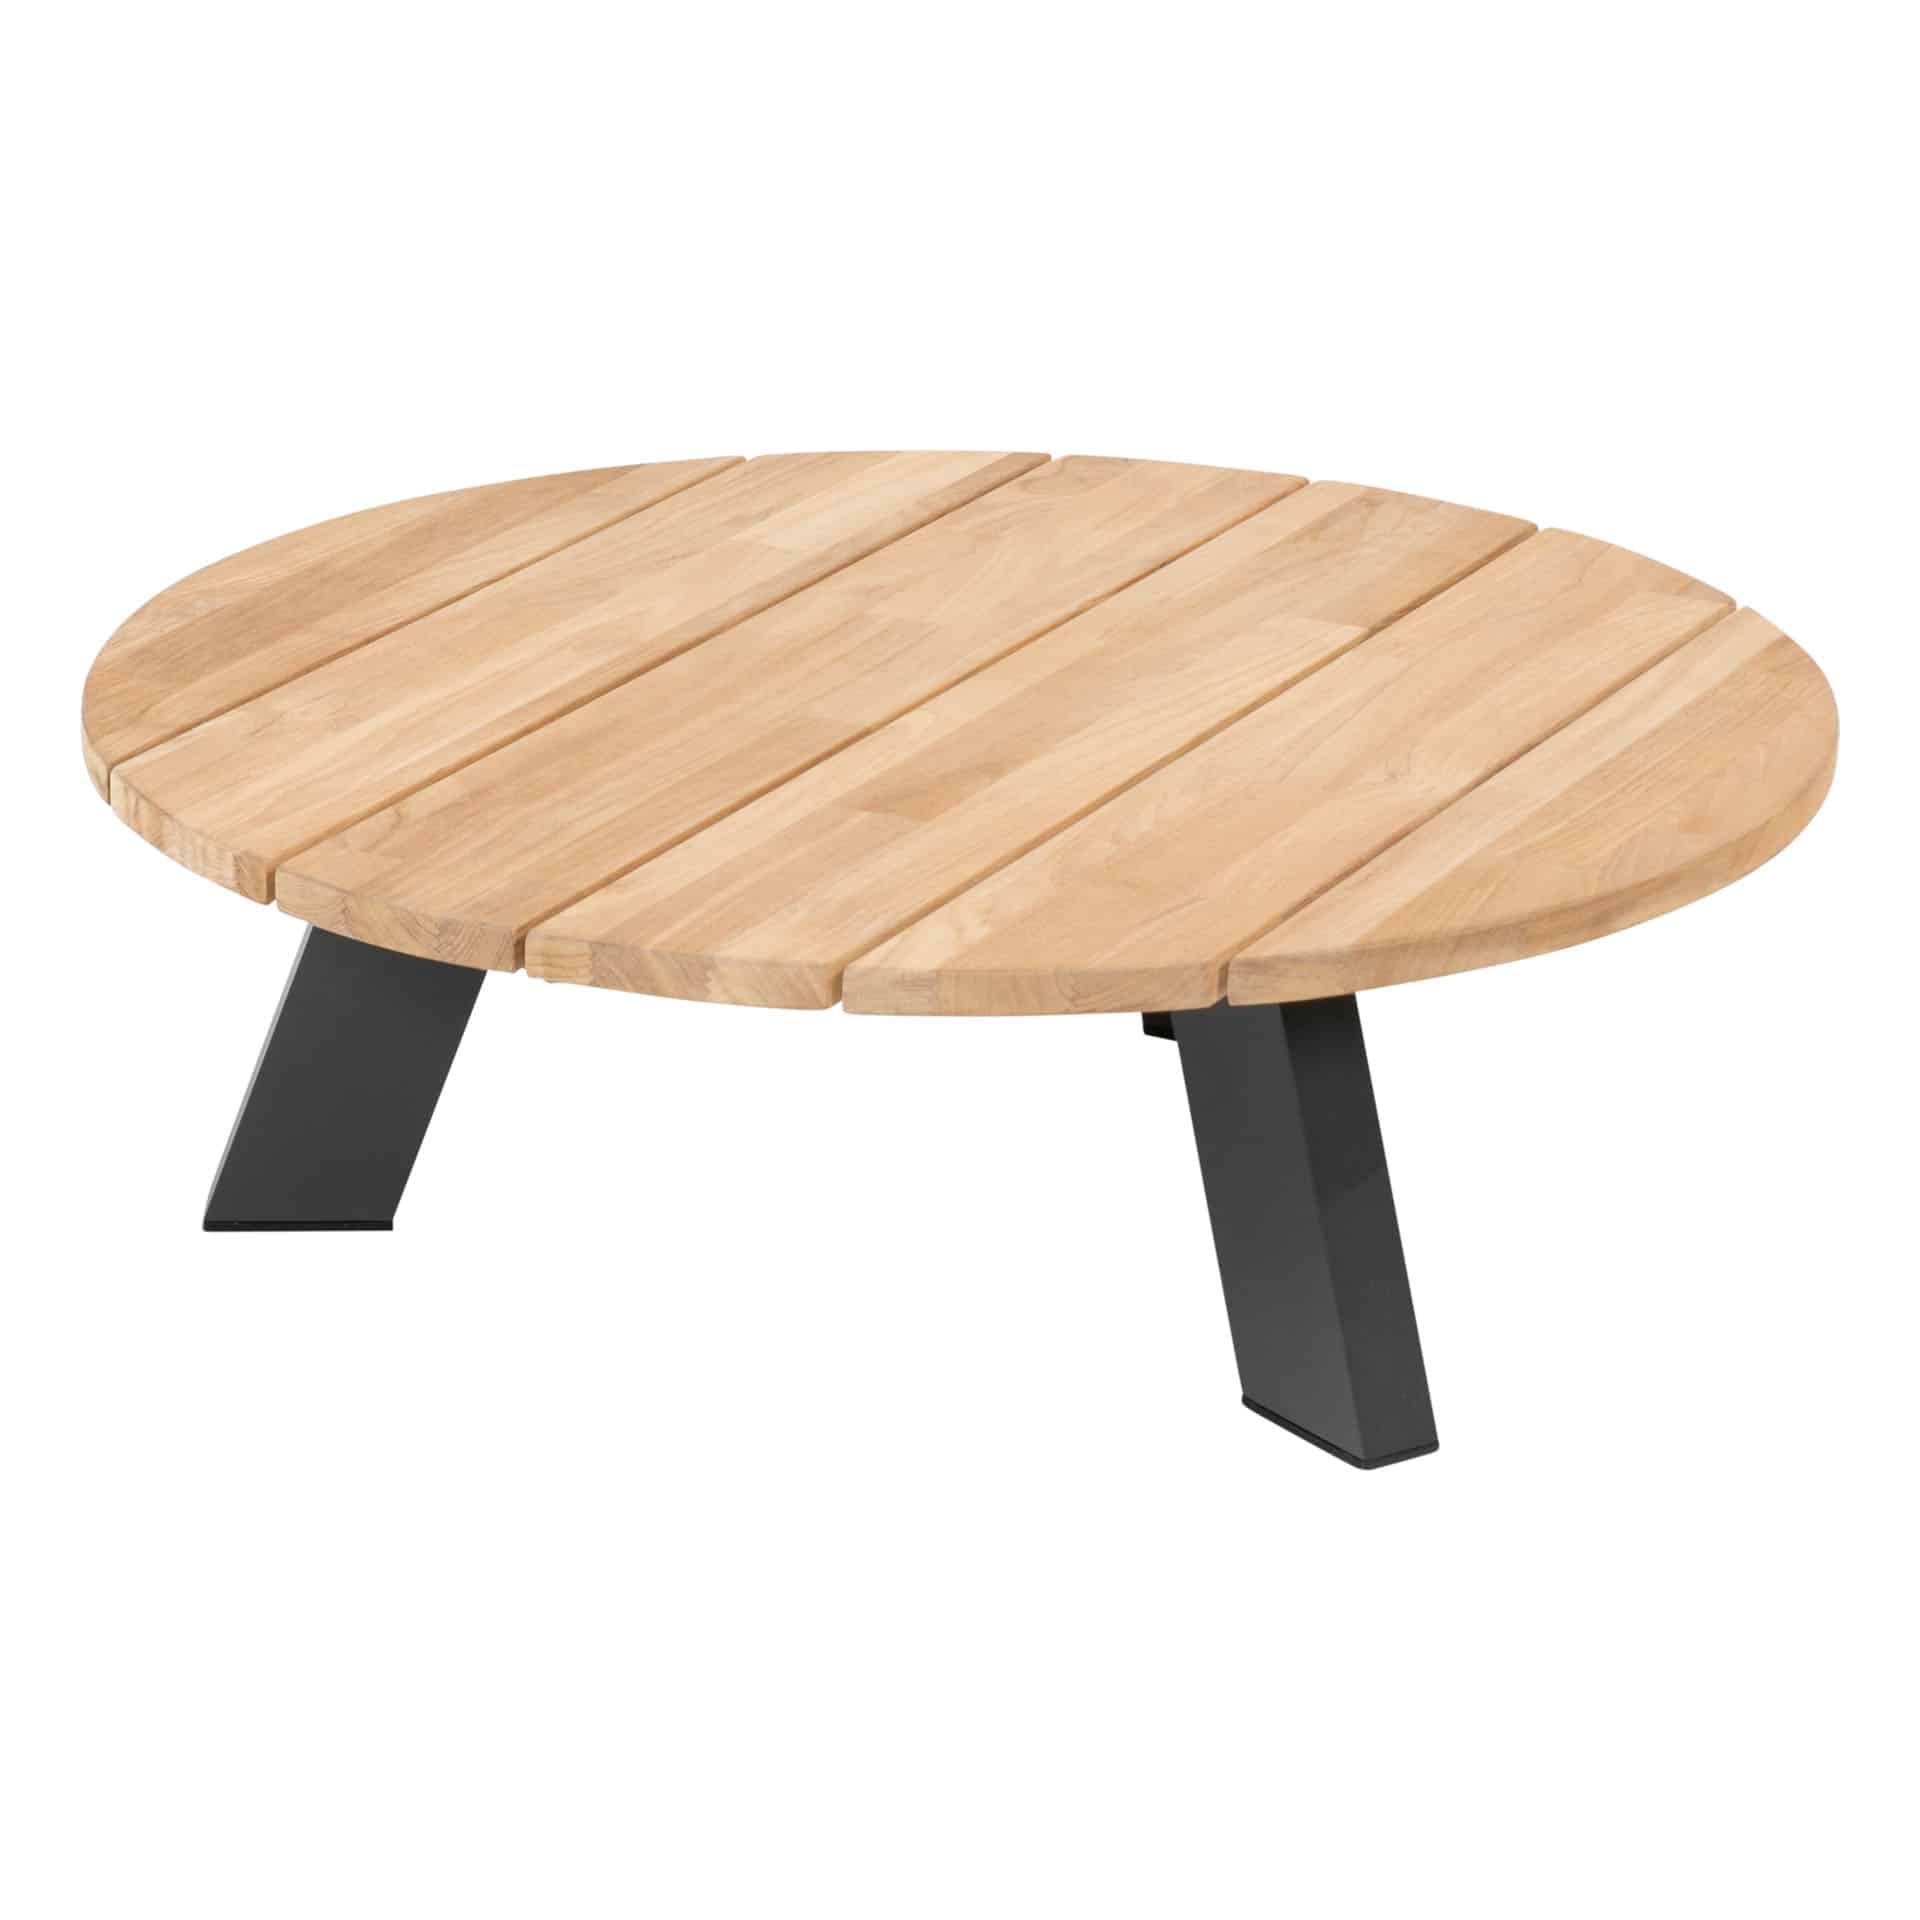 4 Seasons Outdoor Cosmic ronde (ø78) salontafel met teak tafelblad en antraciet aluminium frame.